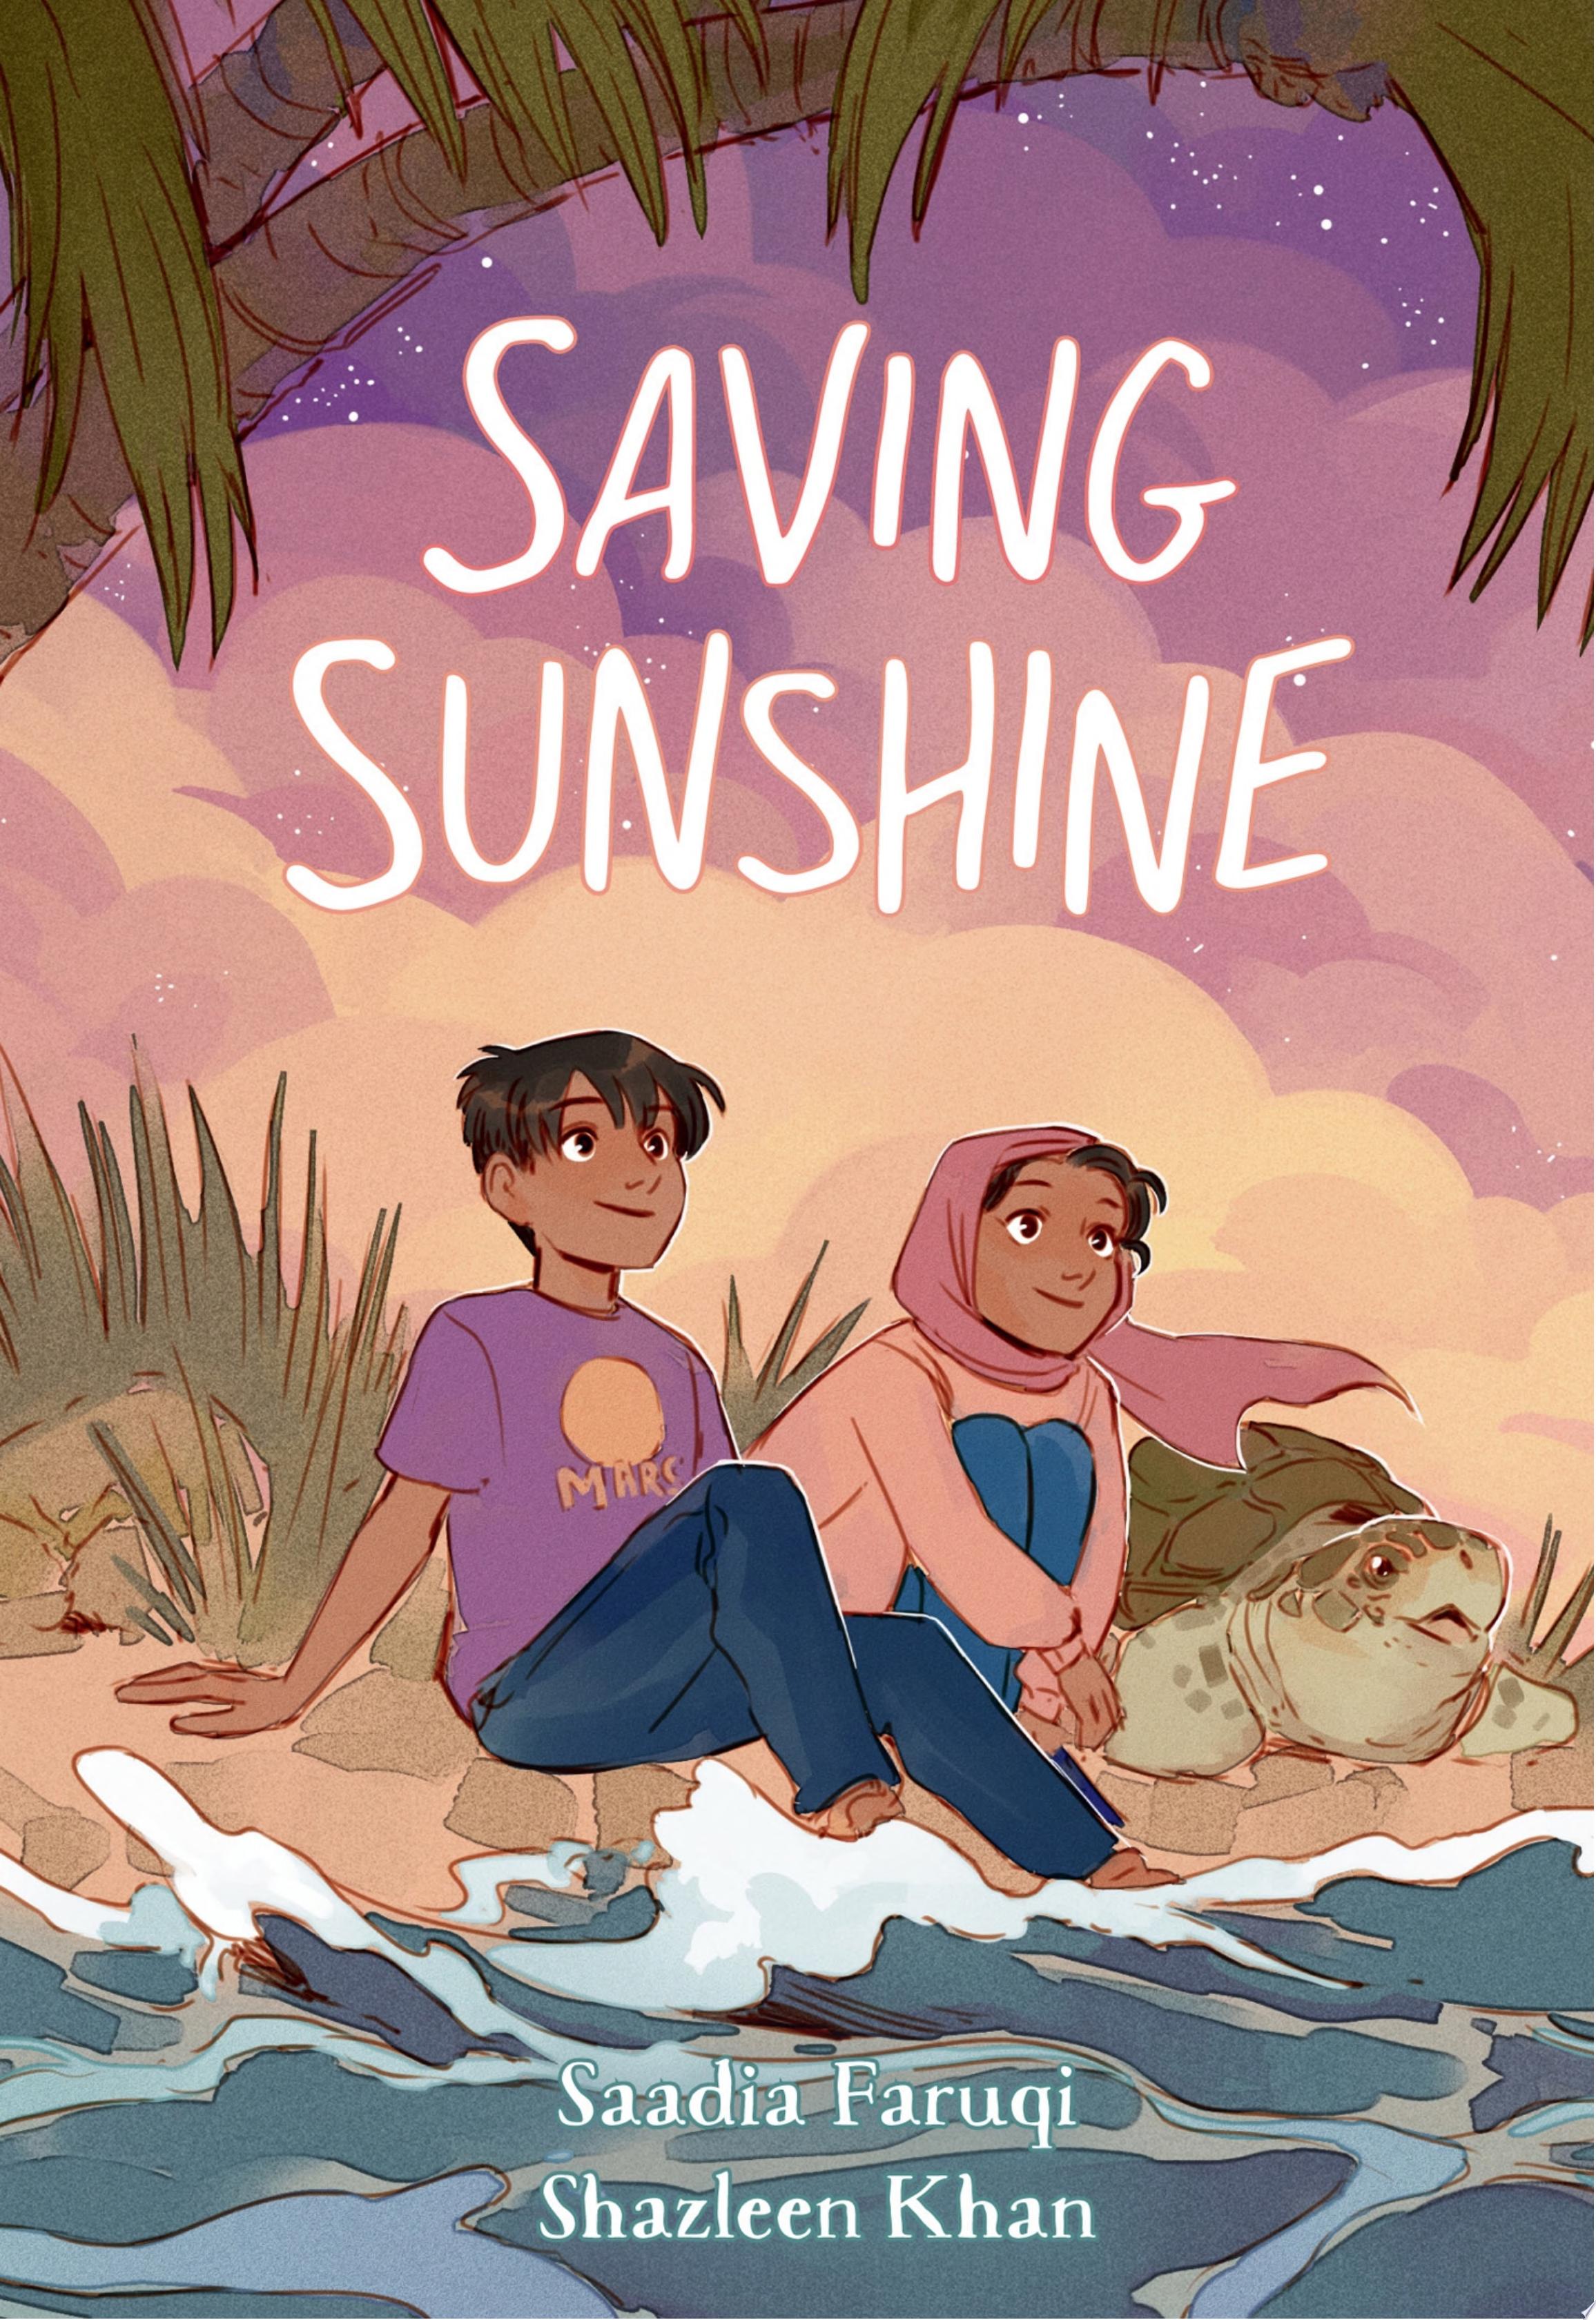 Image for "Saving Sunshine"